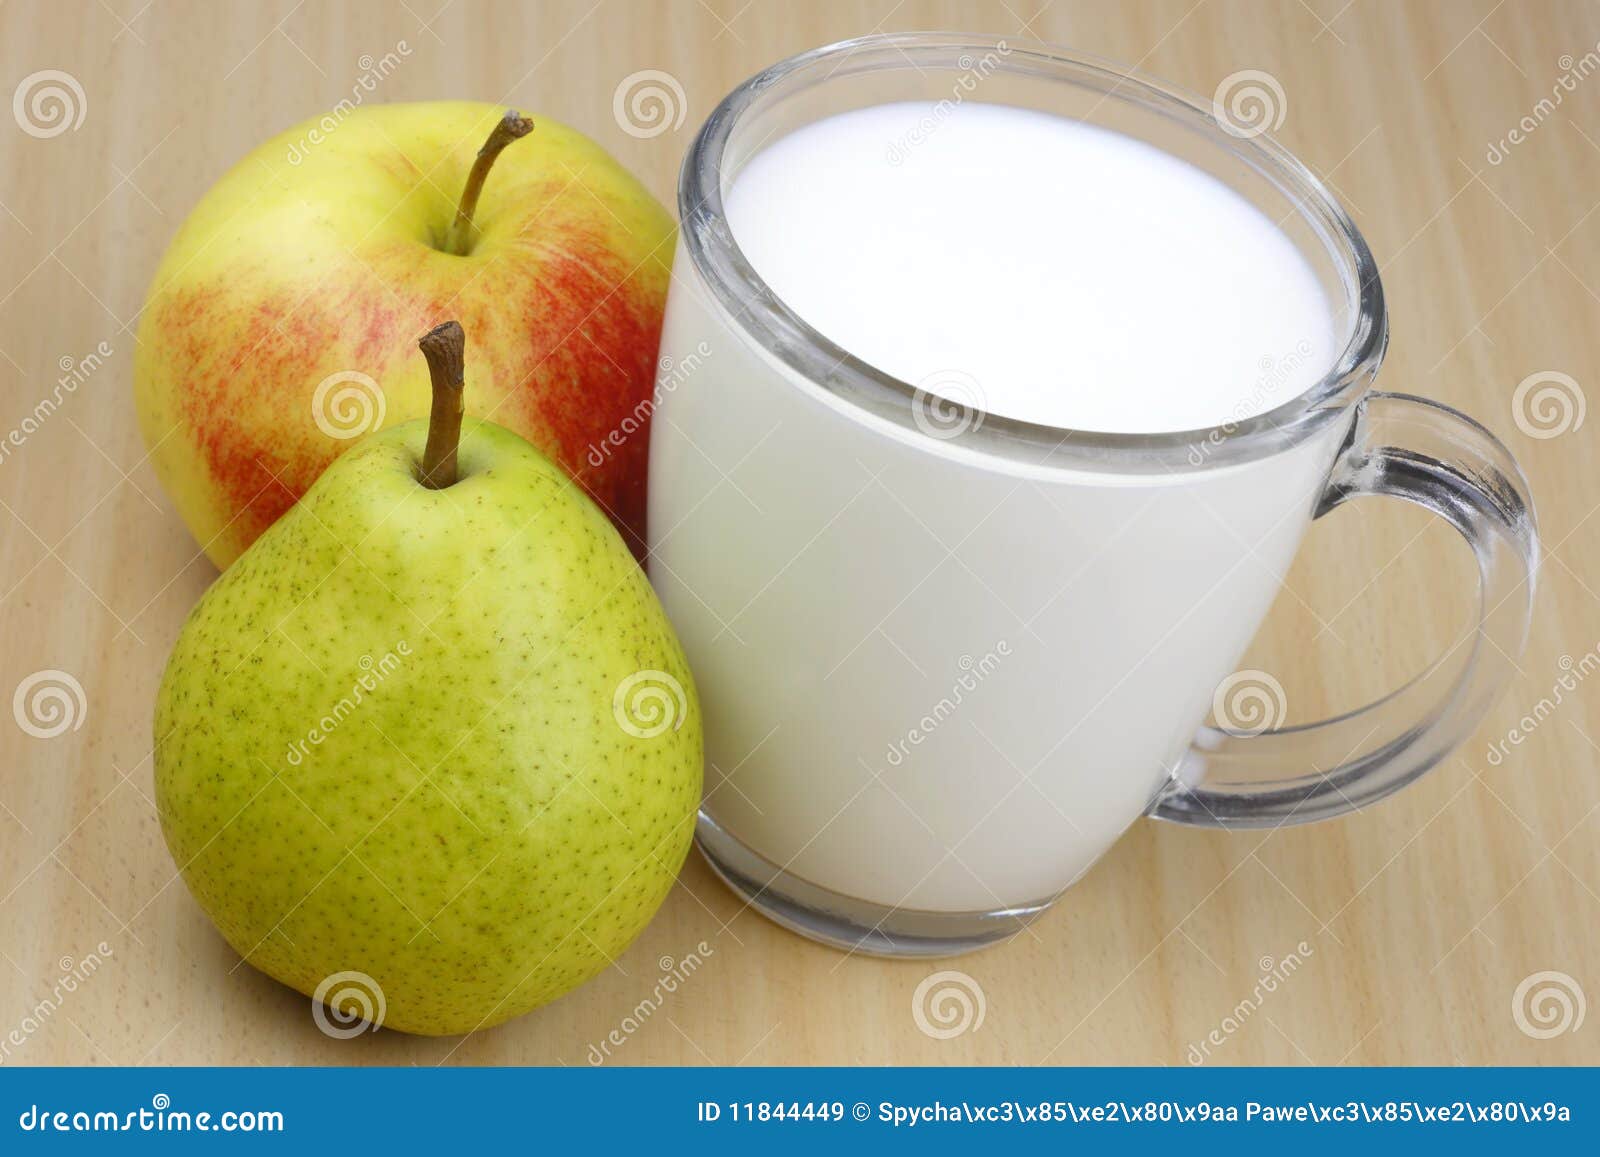 苹果牛奶果汁怎么做_苹果牛奶果汁的做法_豆果美食